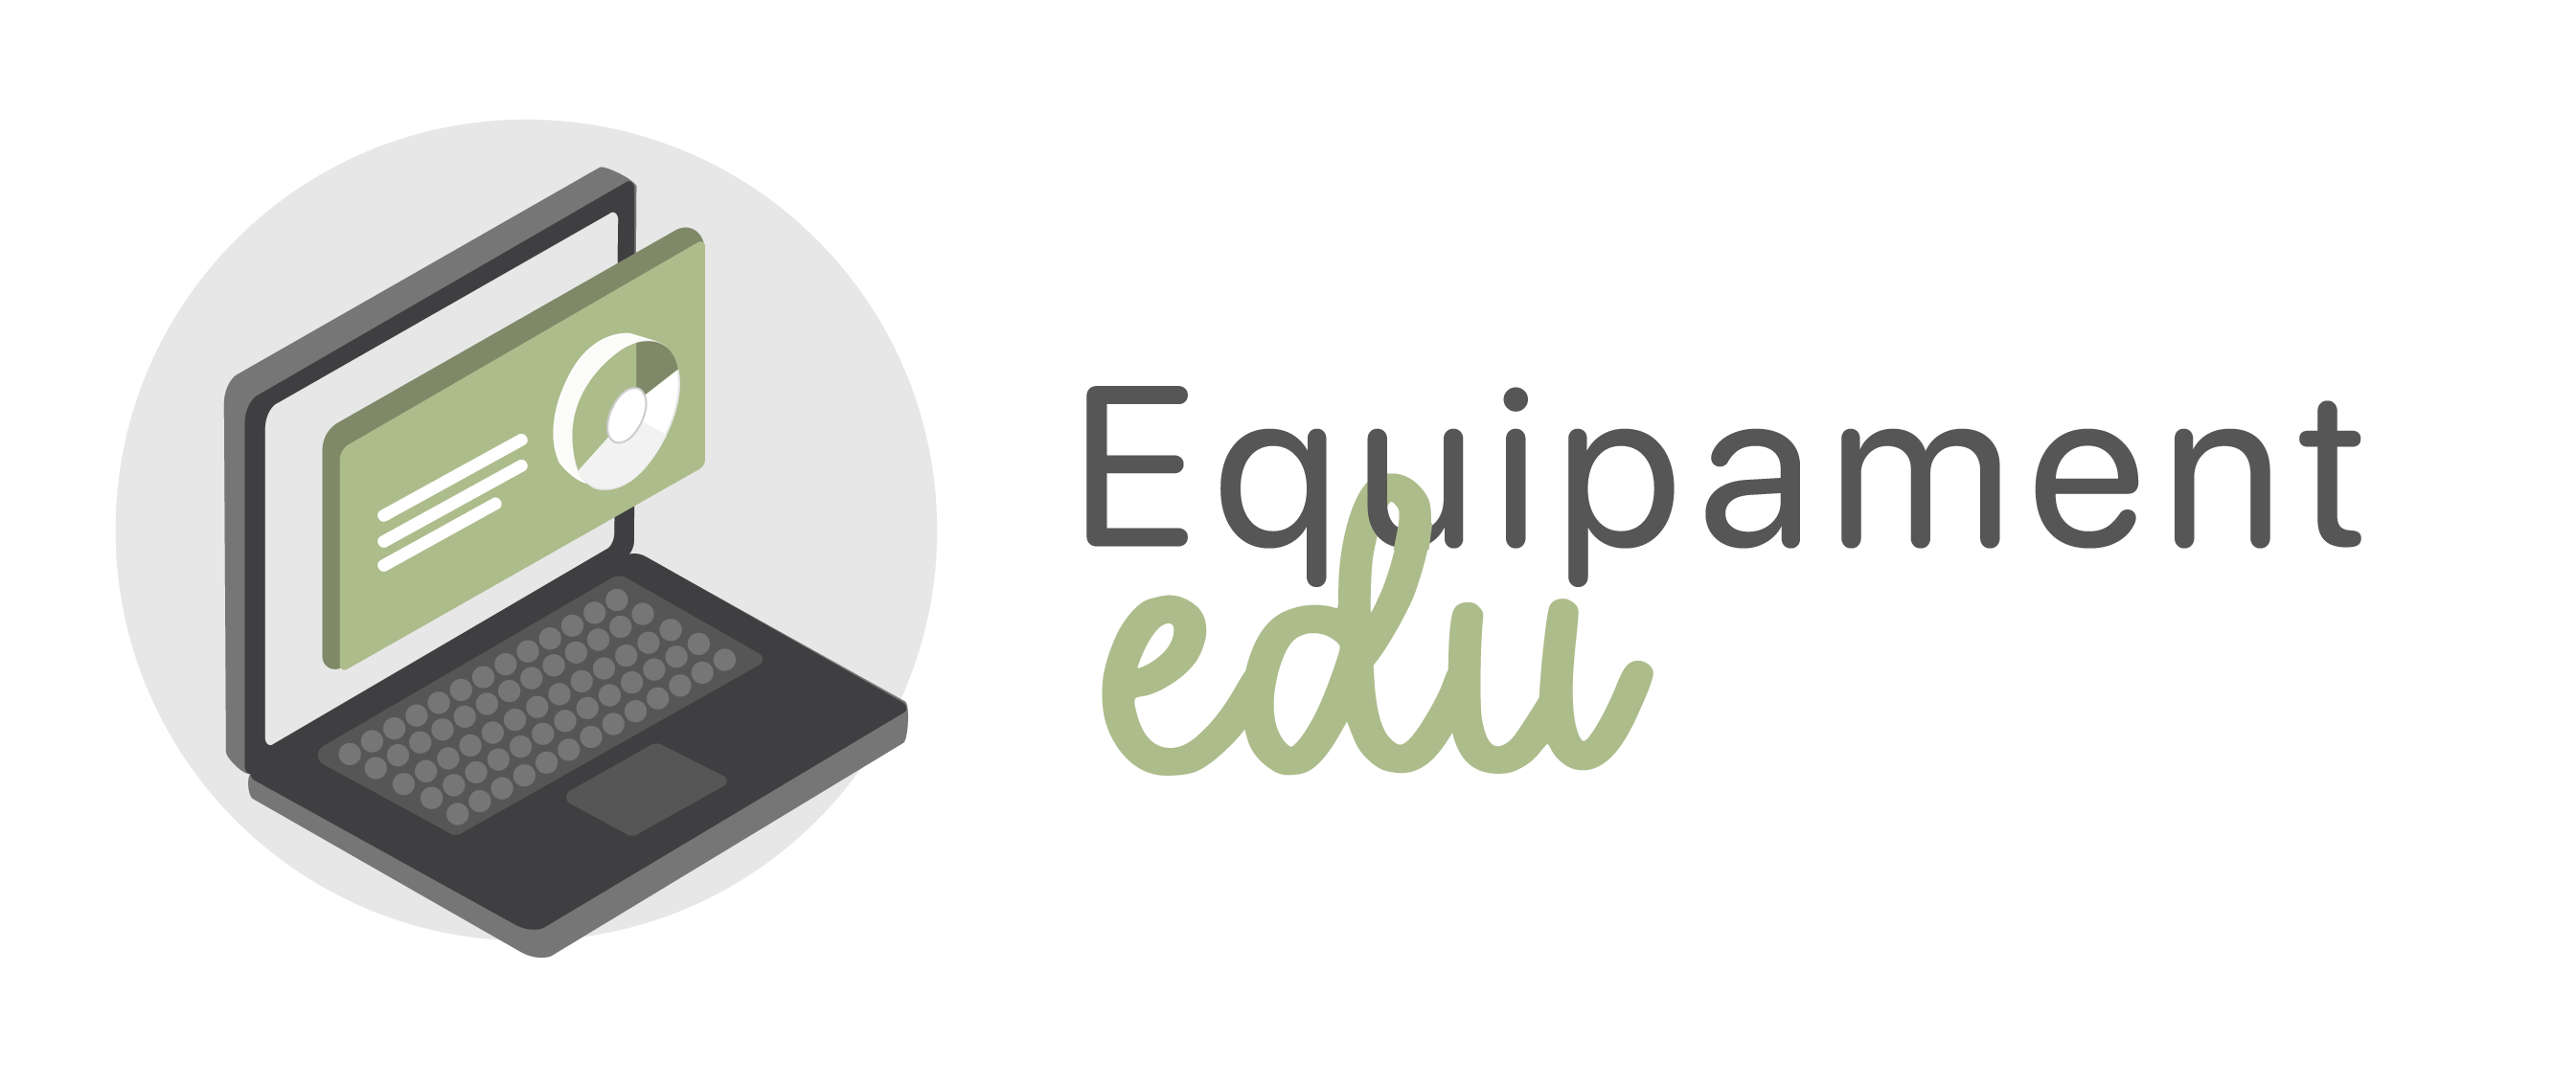 Logotip del projecte Equipament edu.